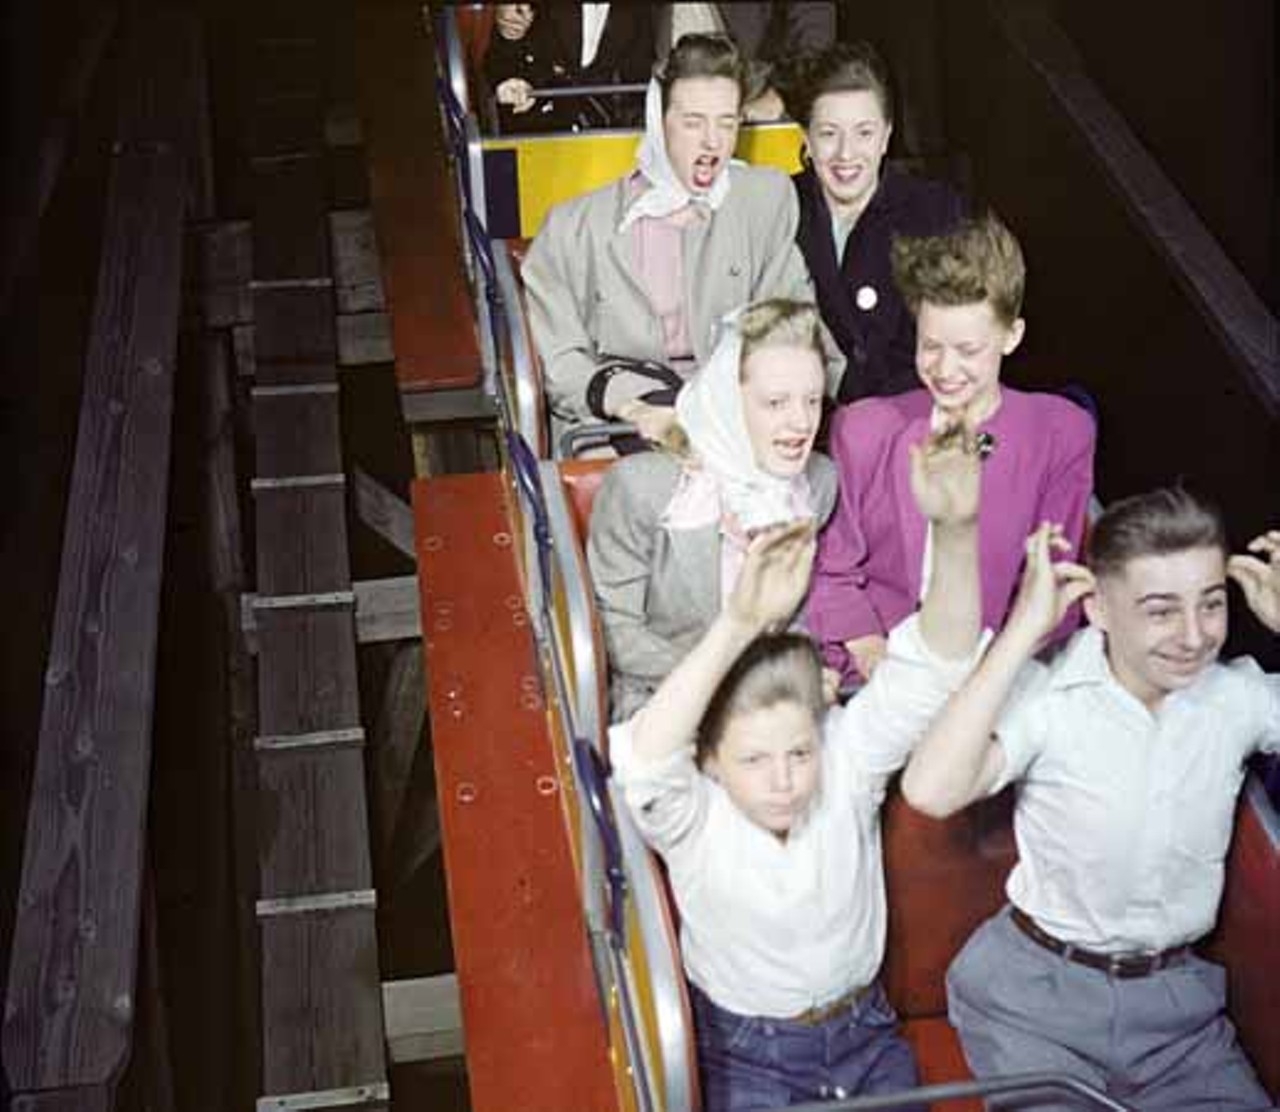 21 Vintage Photos of Forest Park Highlands Amusement Park